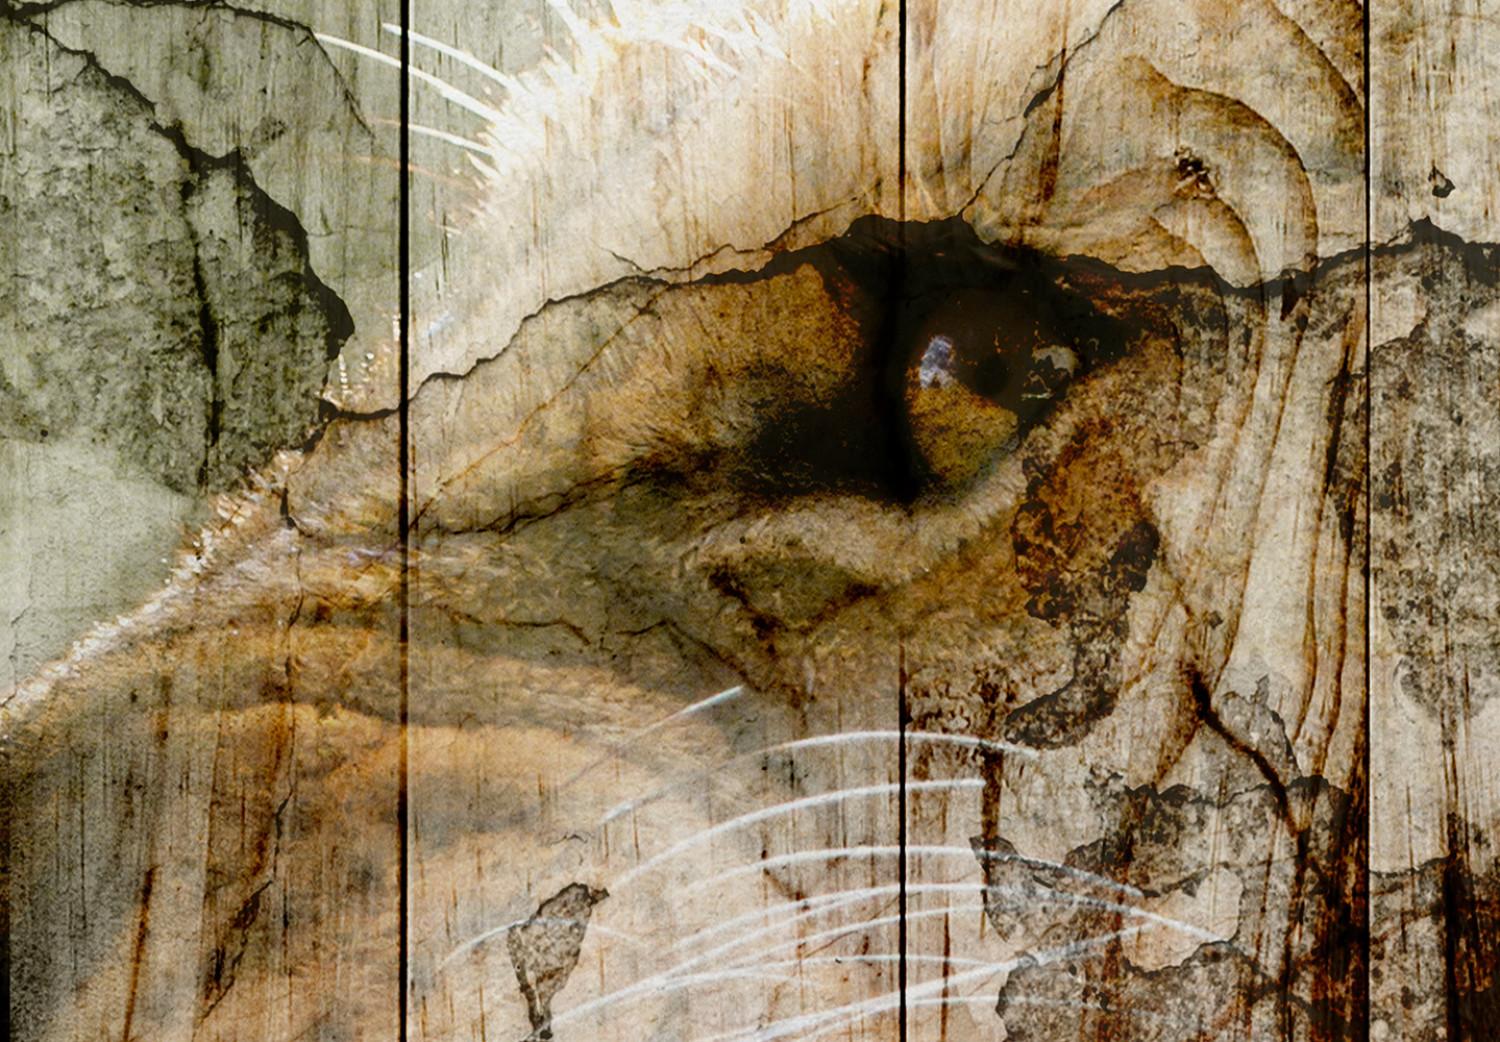 Fotomural a medida Naturaleza primordial - imágenes artísticas entrelazadas de un fondo y un gato salvaje en tonos sepia